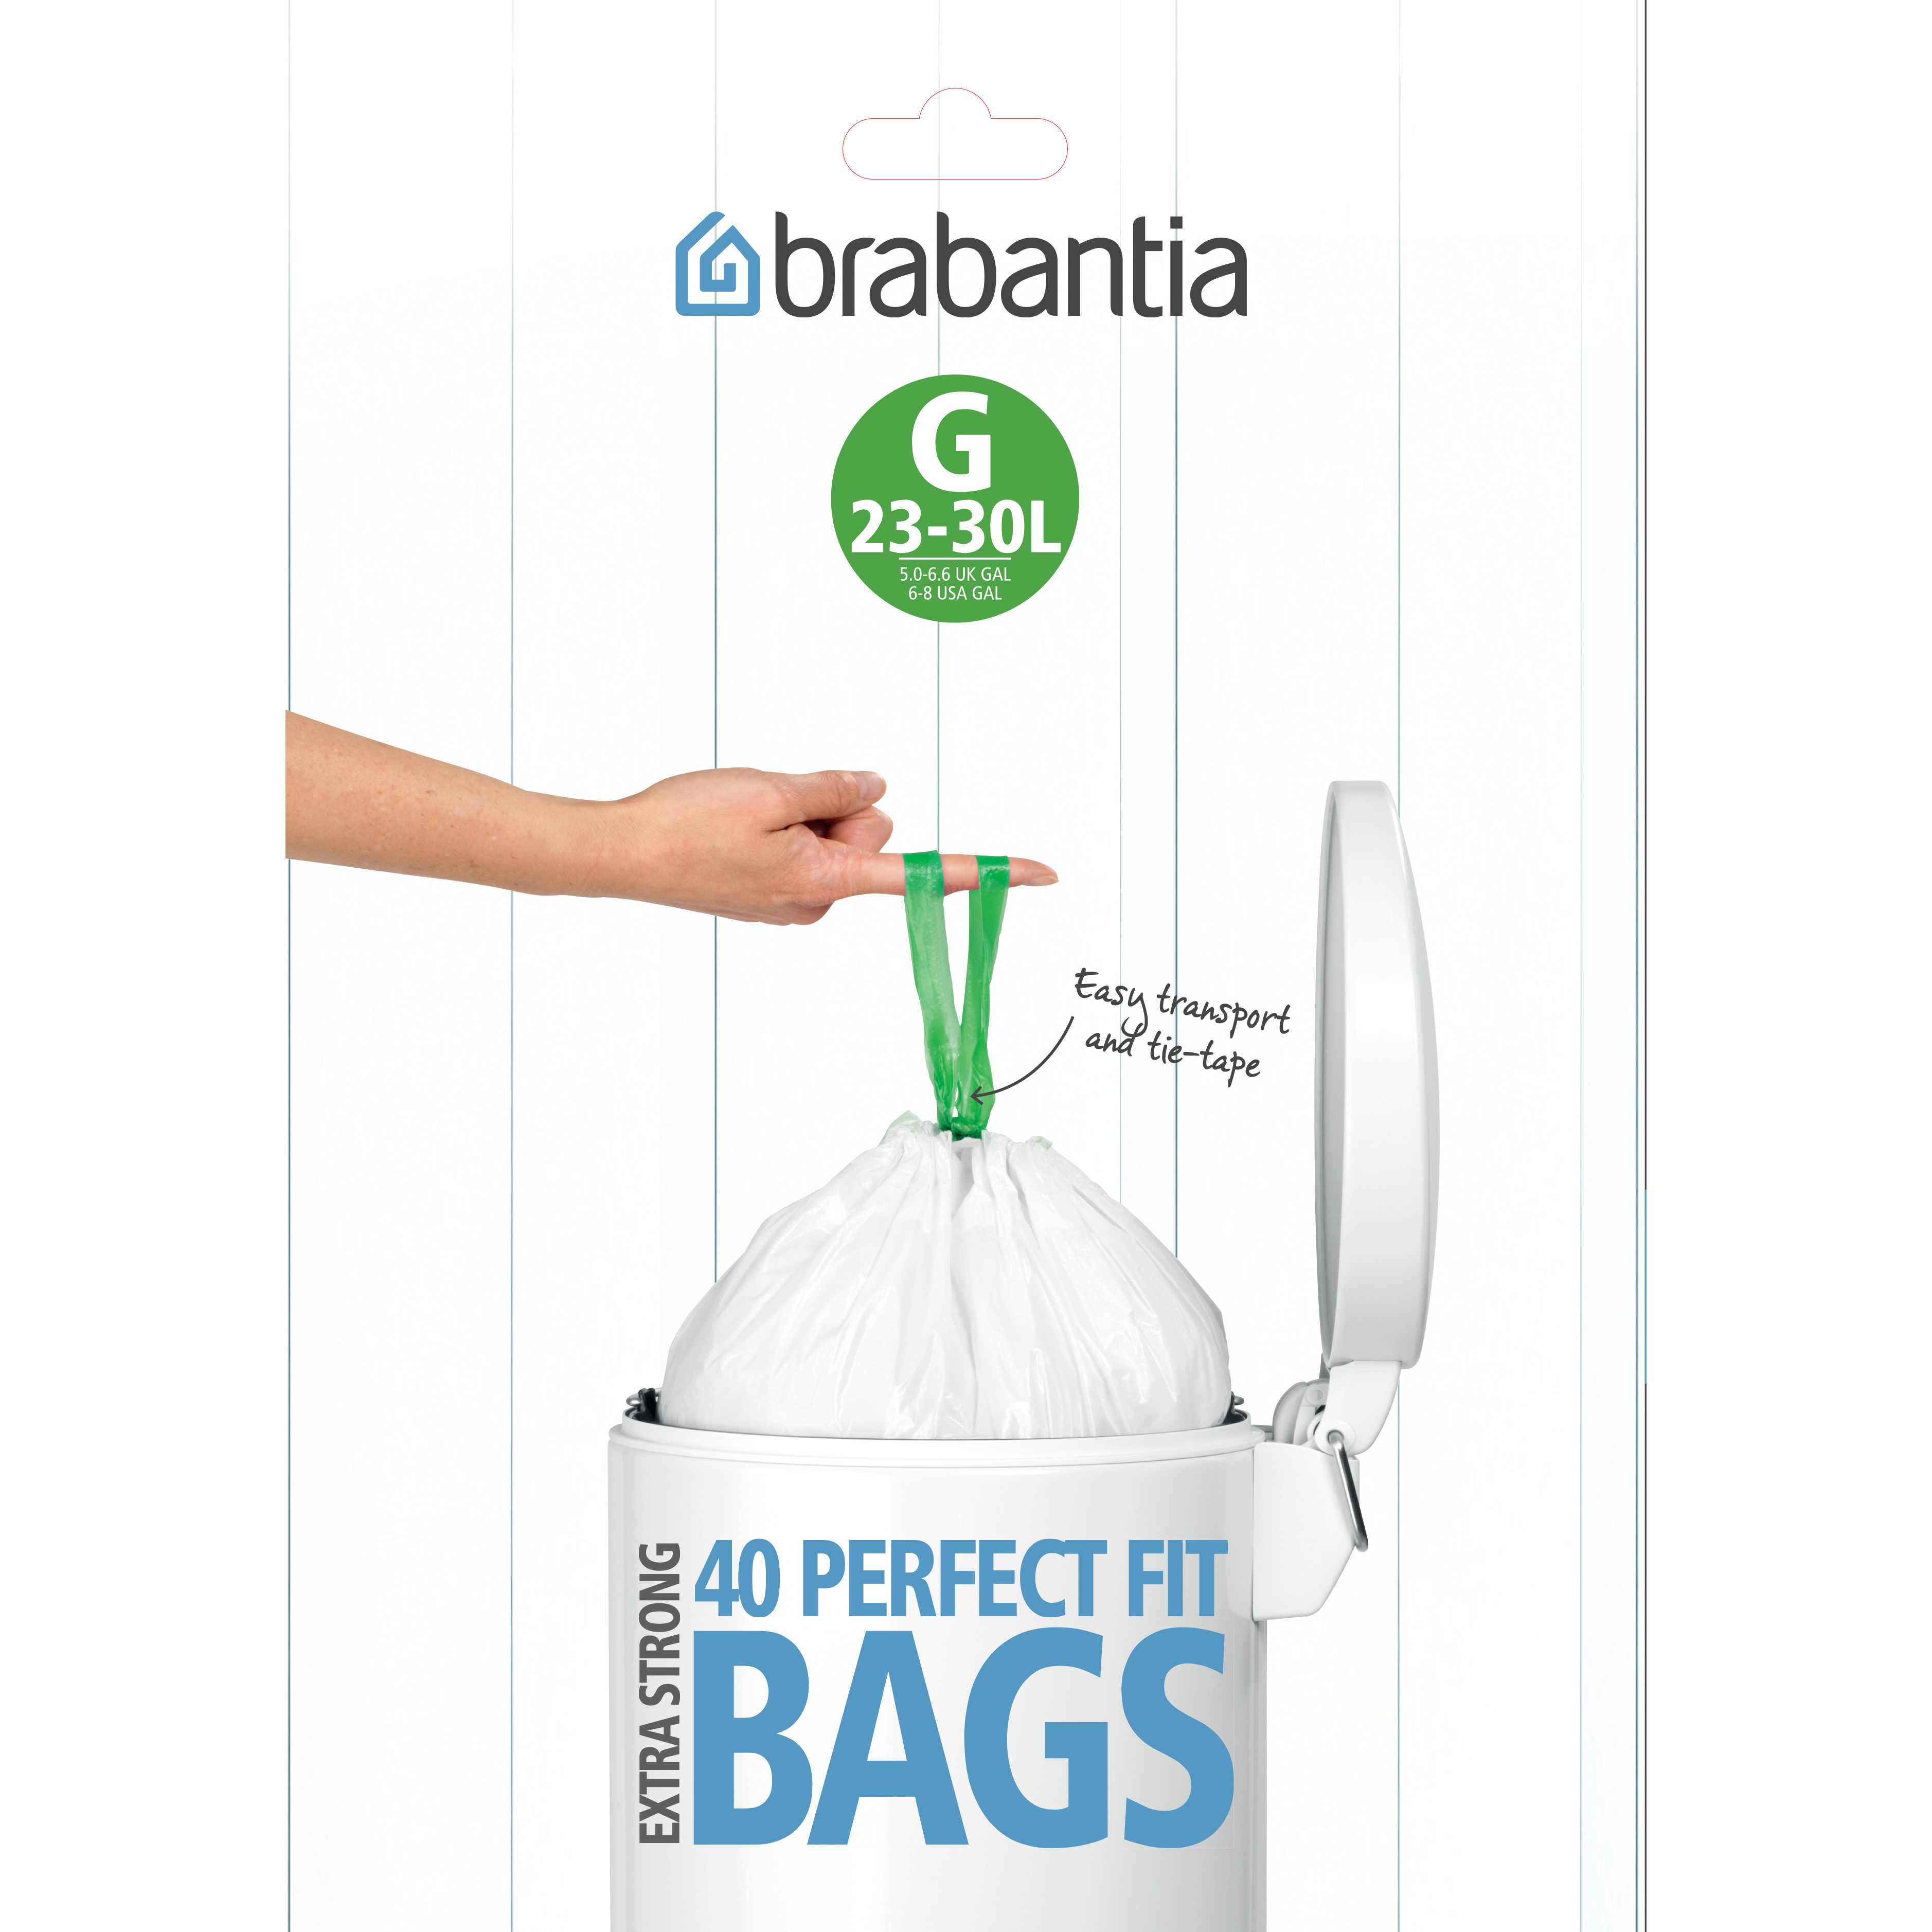 Bin bags G PERFECTFIT 23-30 l, 20 pcs, Brabantia 